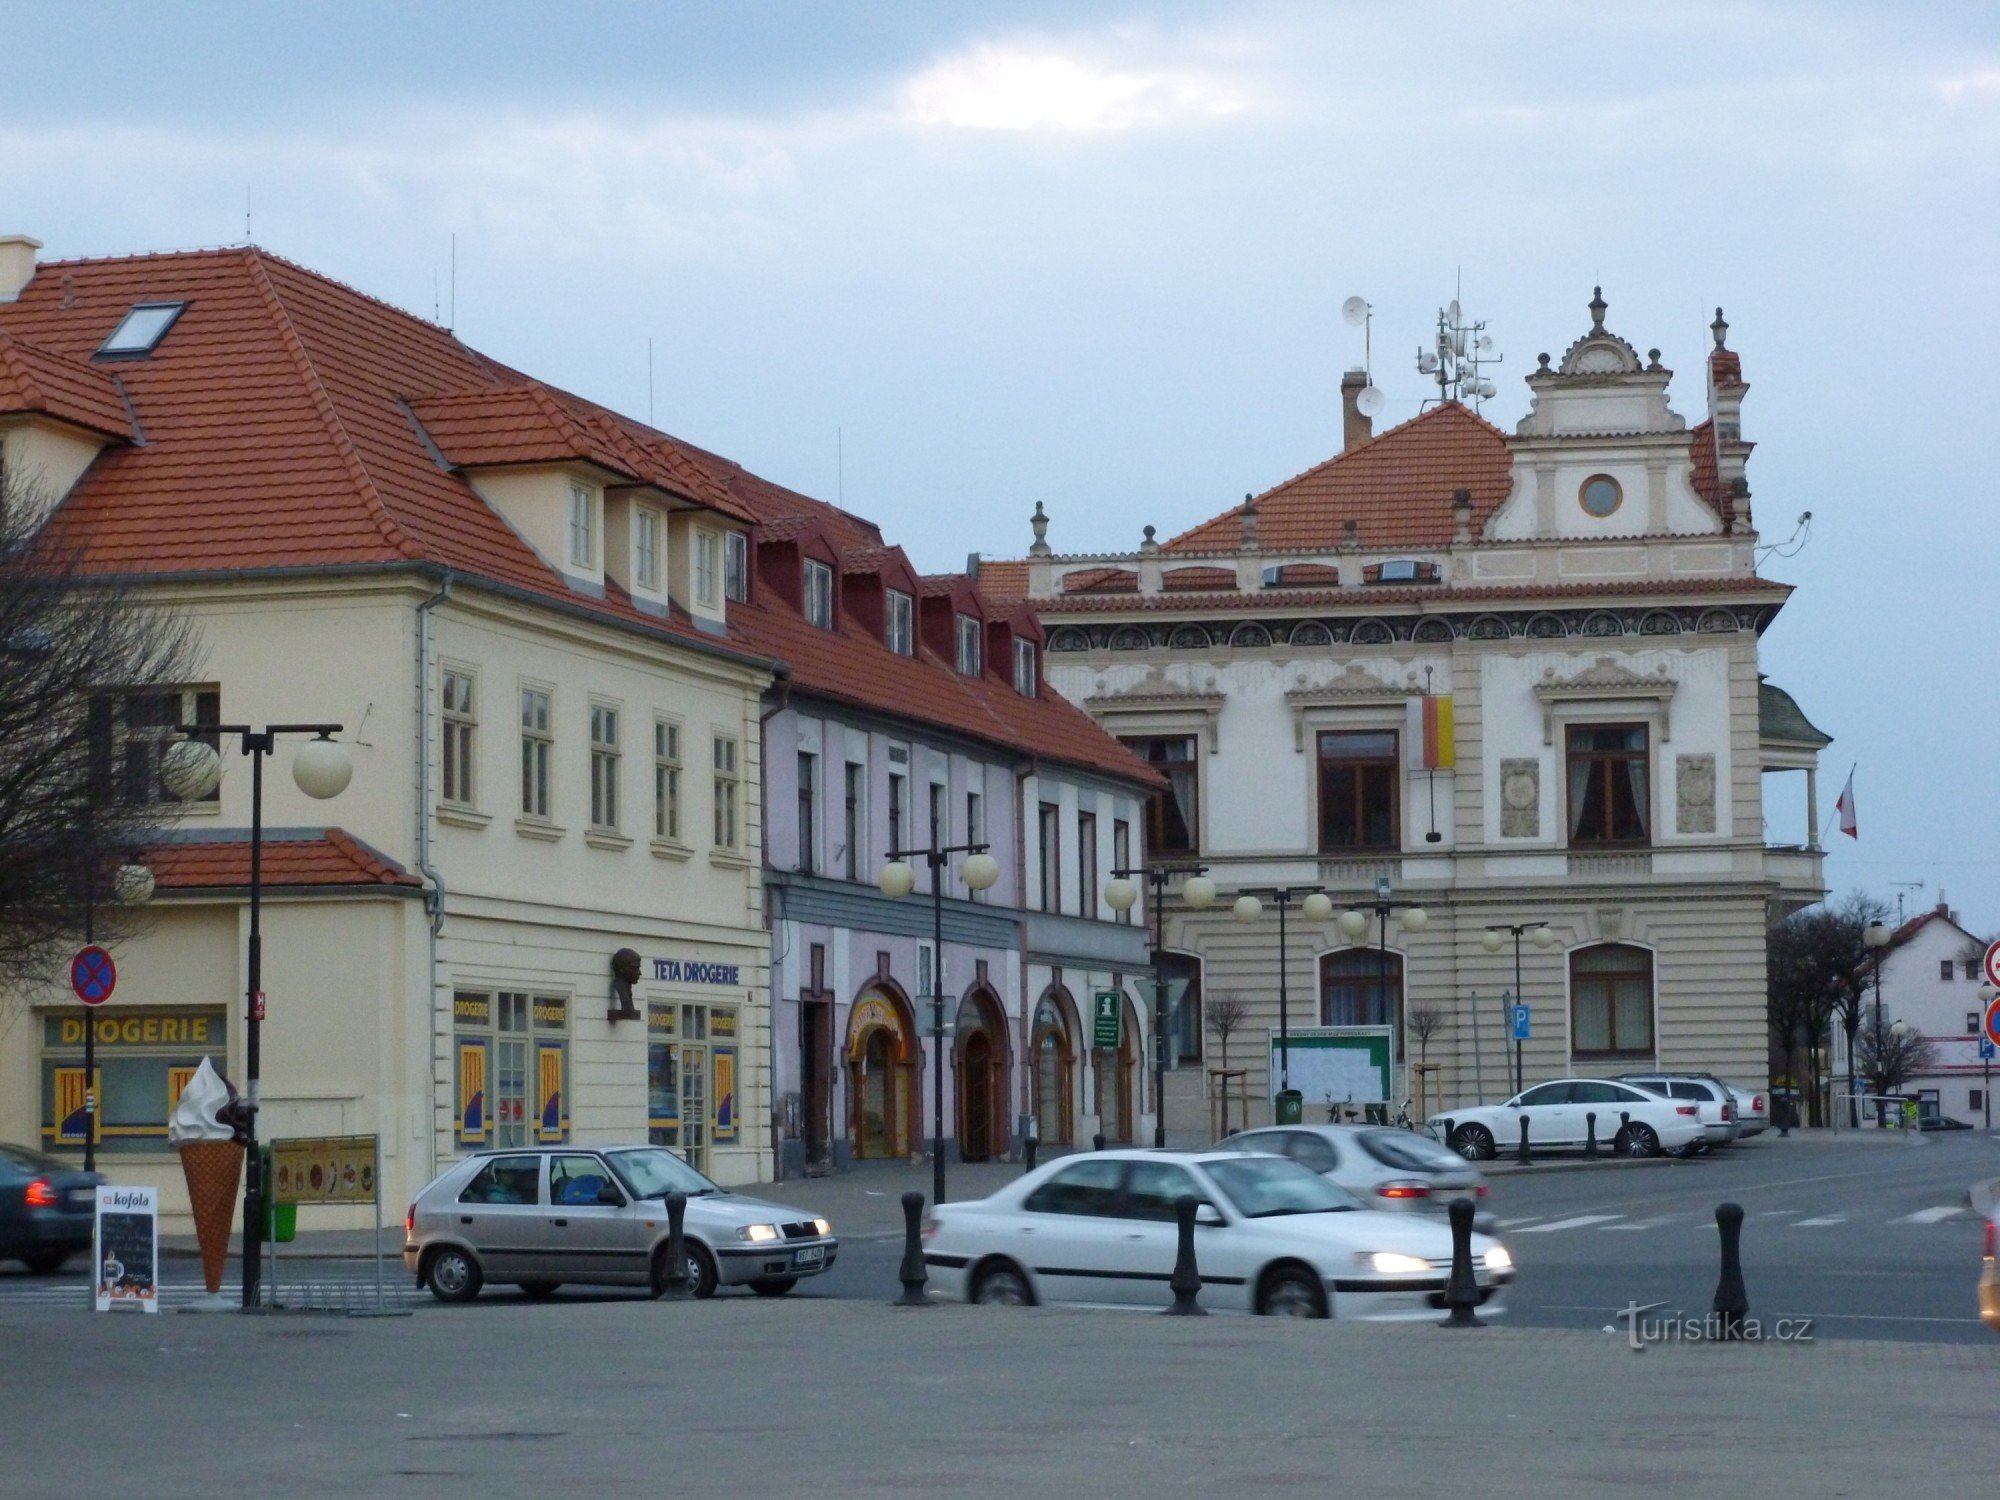 Podebrady - Jiřího náměstí avec centre d'information